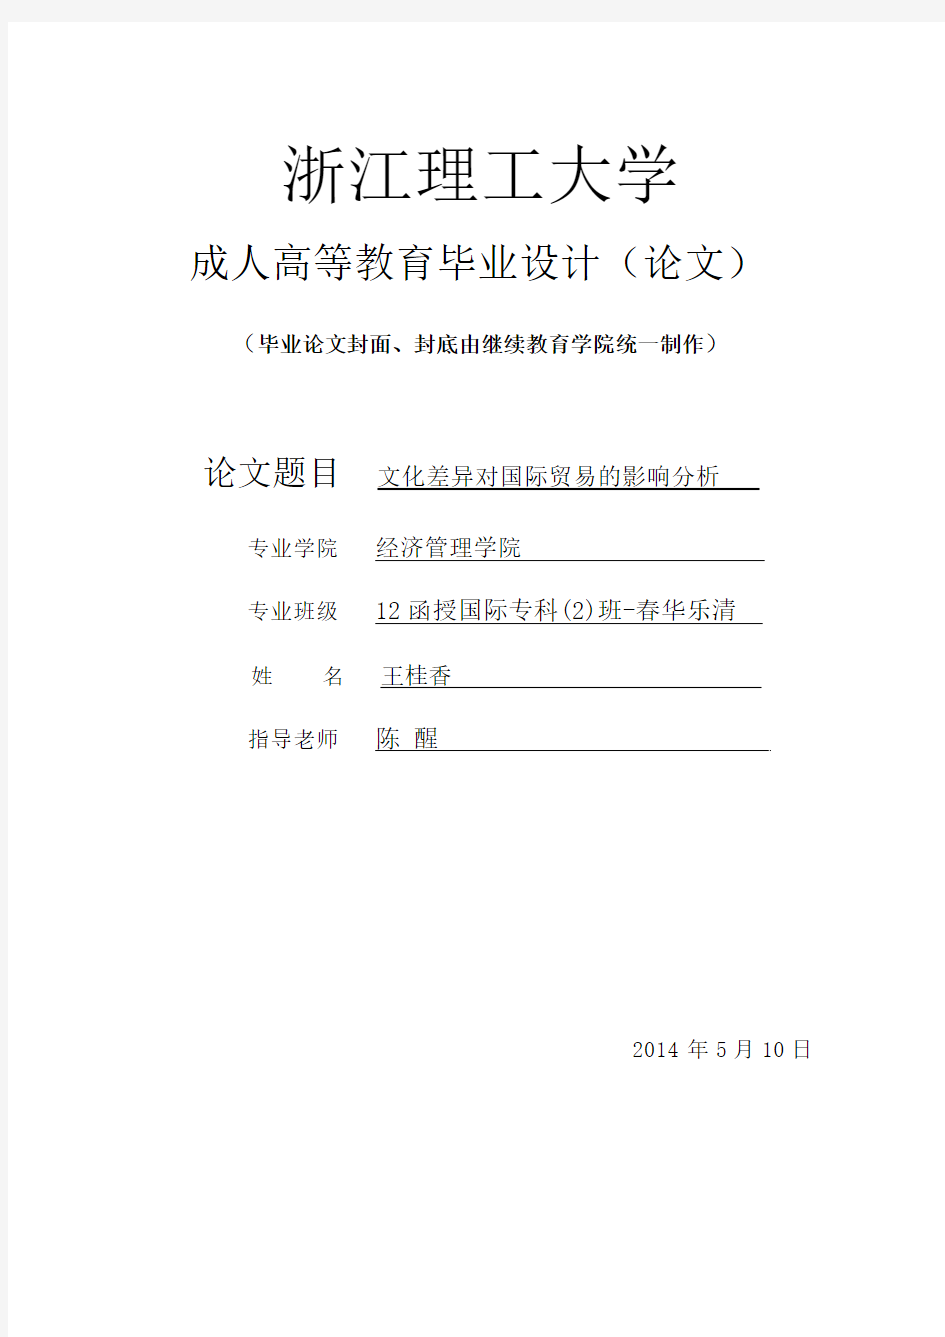 【定稿】王桂香-文化差异对国际经济贸易的影响分析(1)